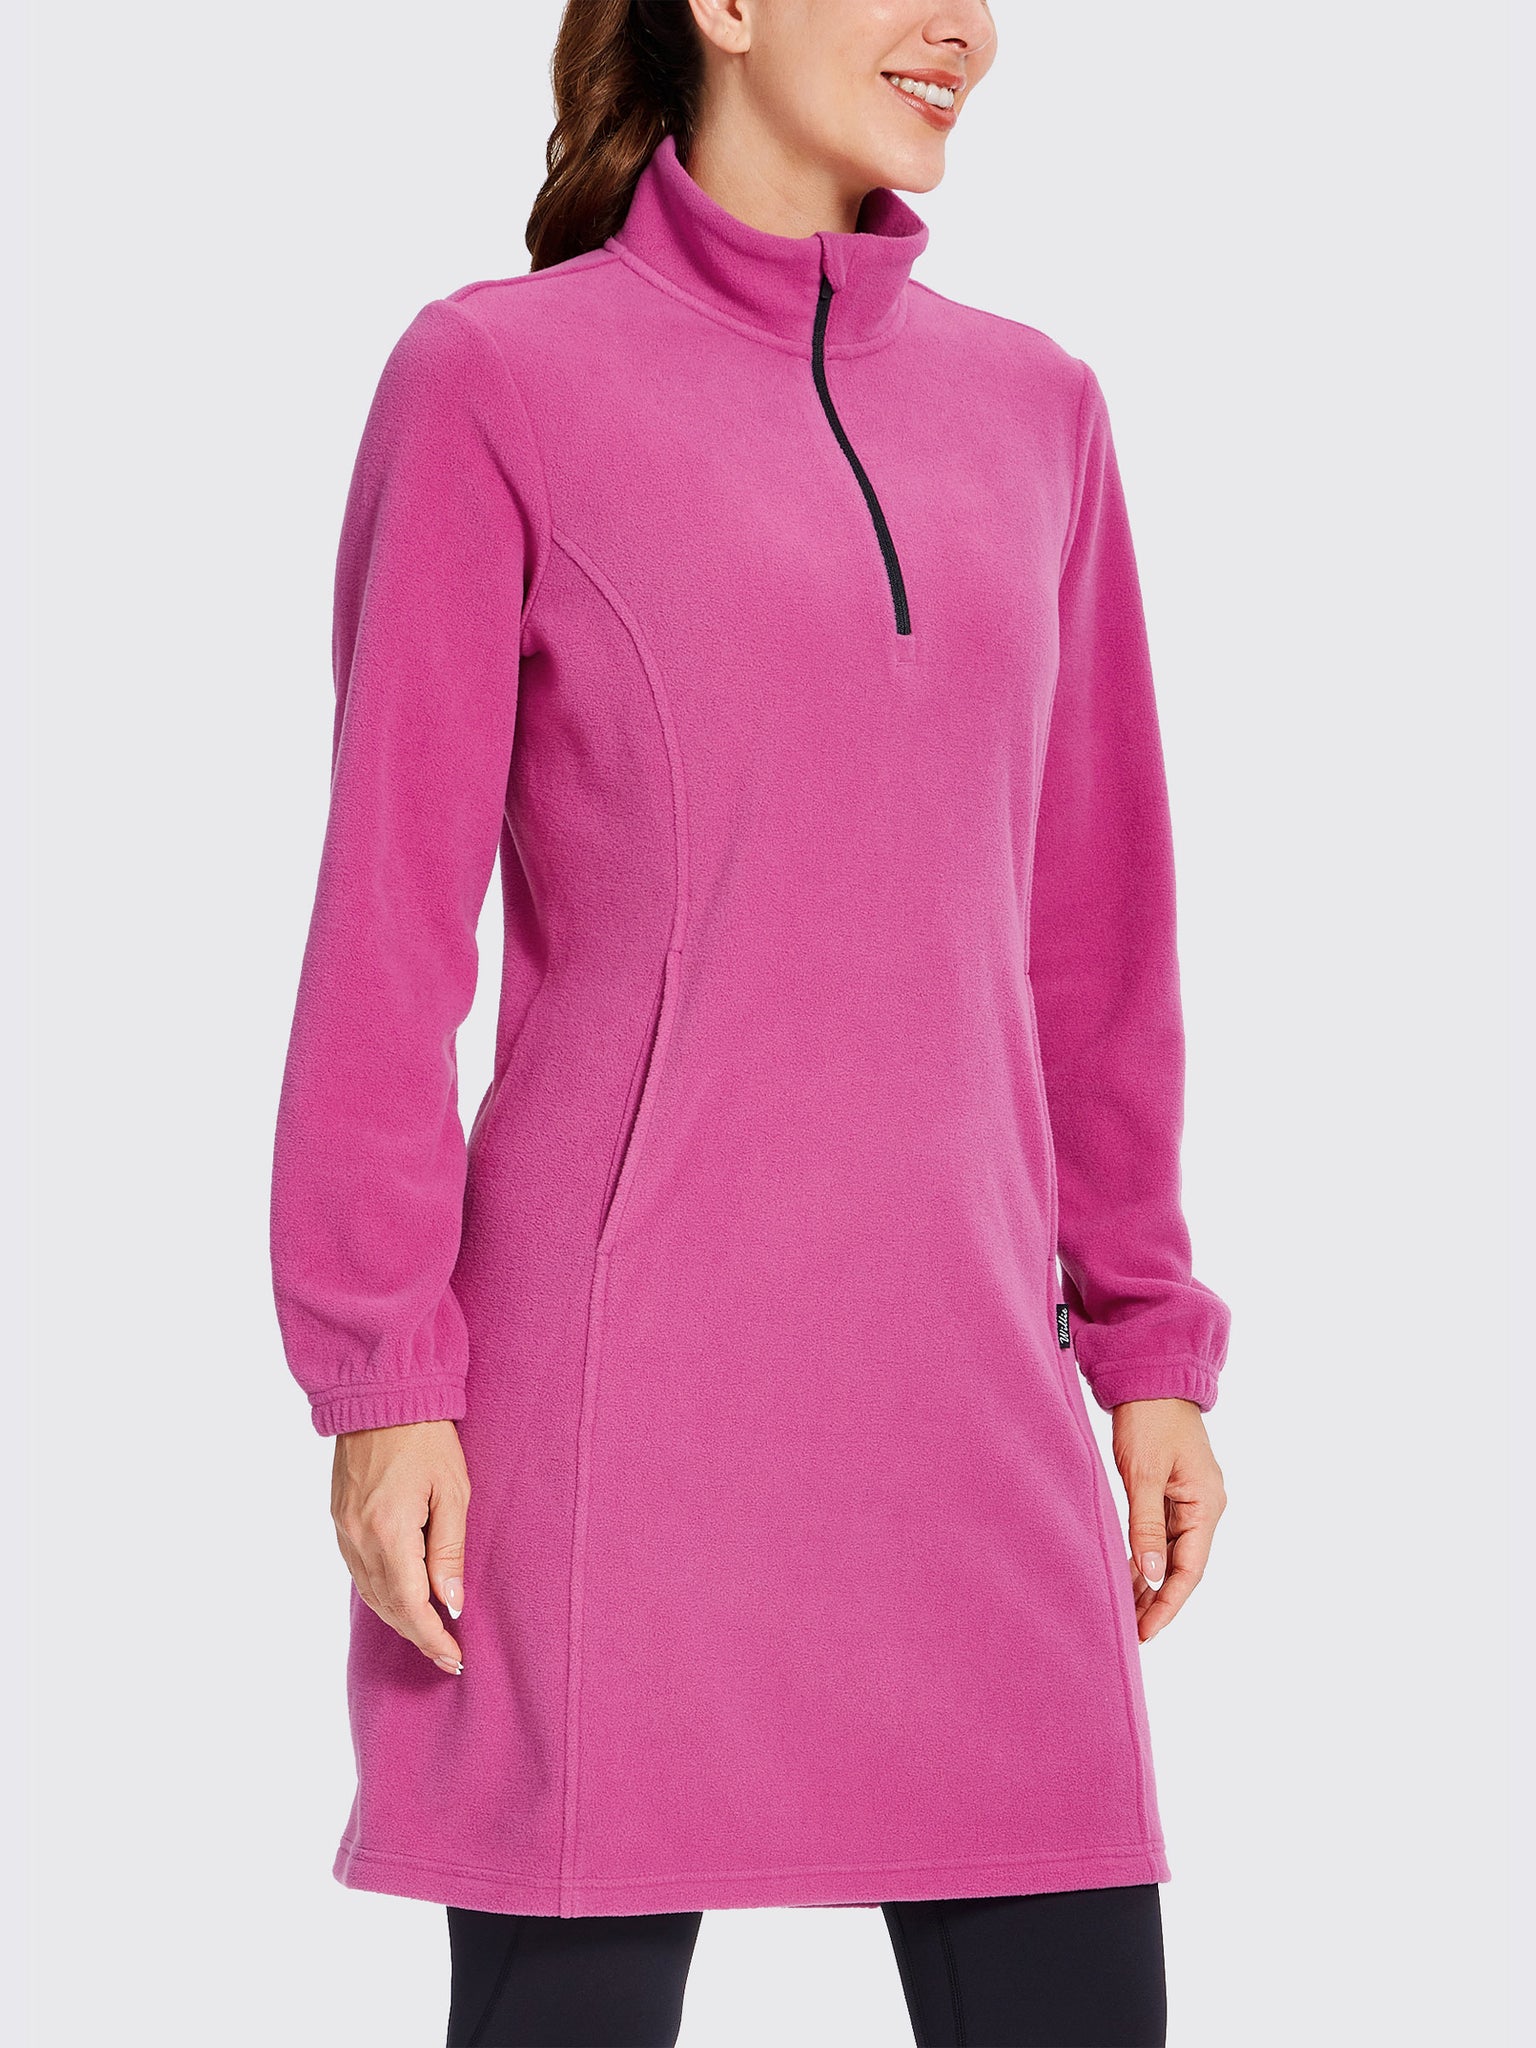 Women's Fleece Long-Sleeve Turtleneck Dress RosePink1